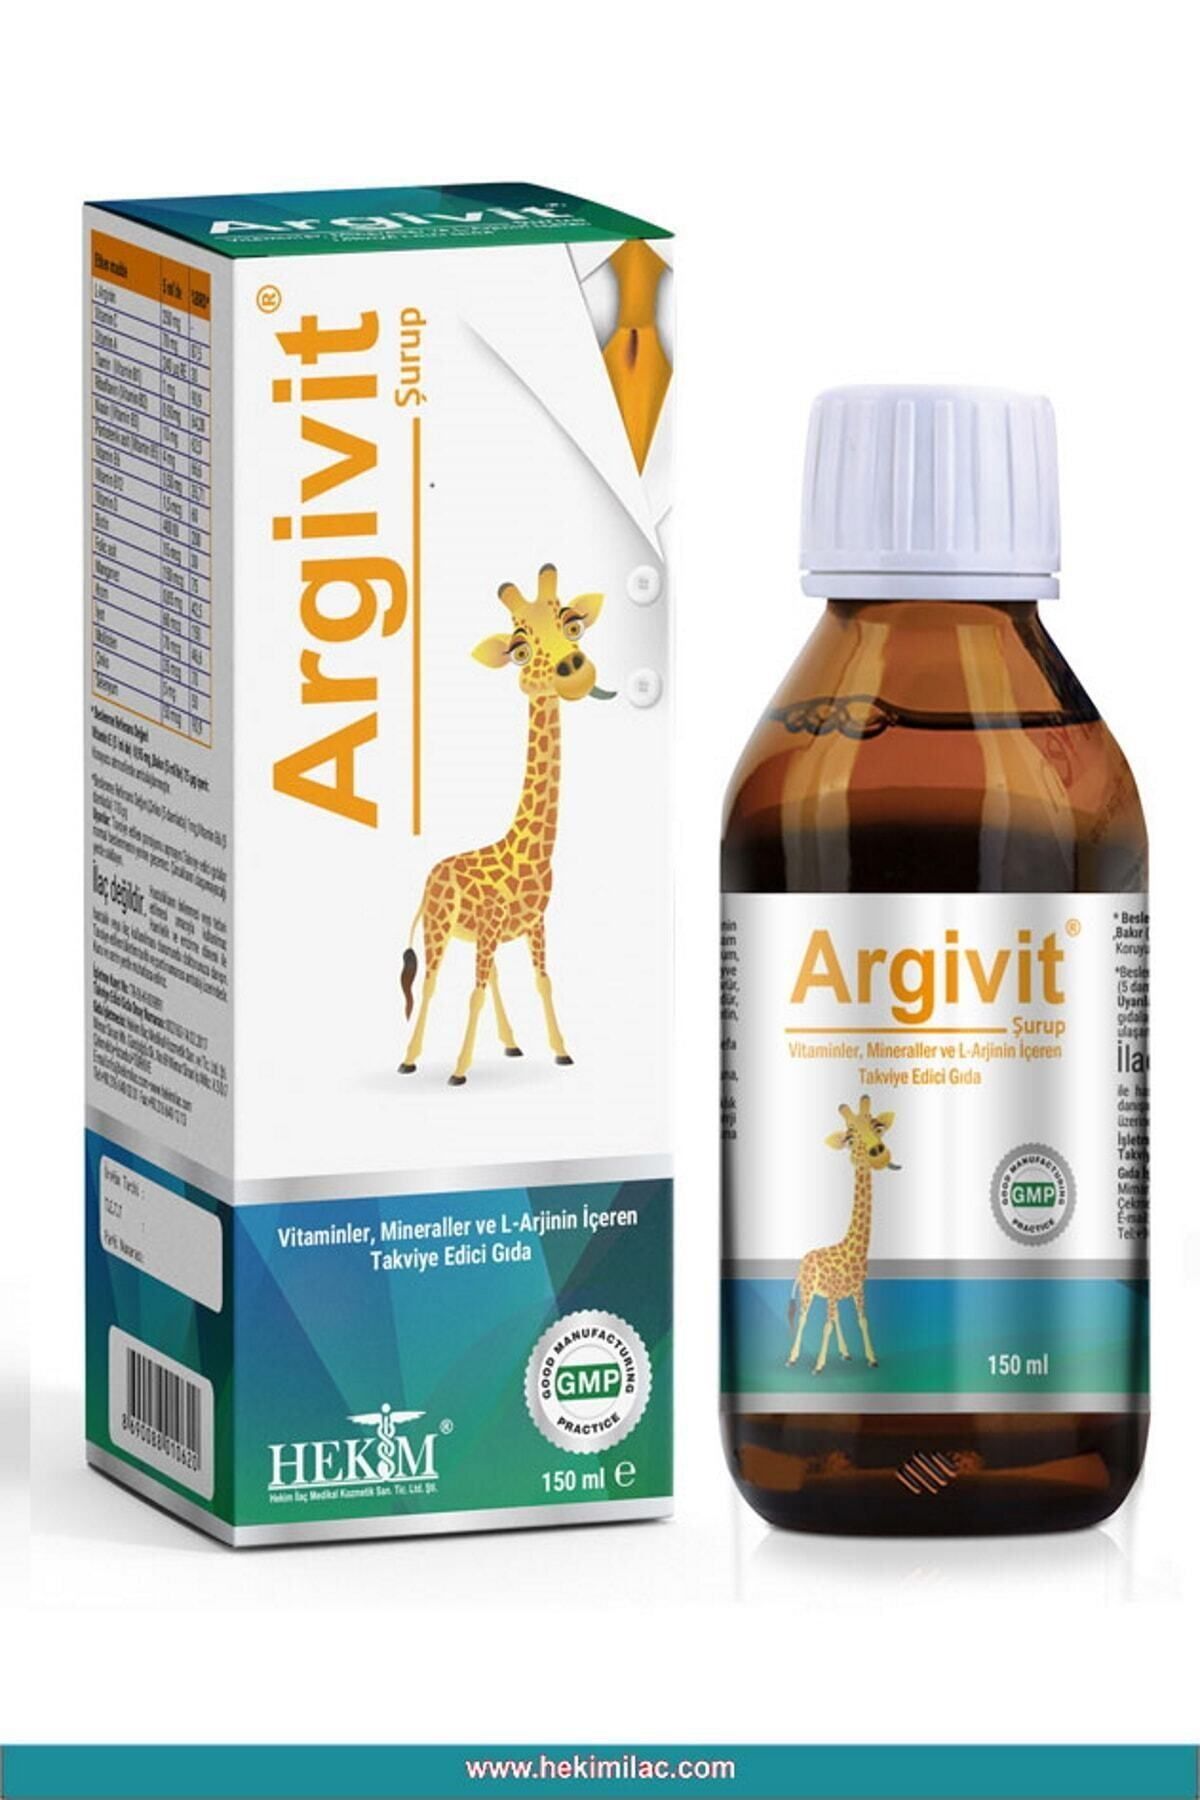 Argivit L-arginin, Vitaminler Ve Mineraller Içeren Takviye Edici Gıda 150ml